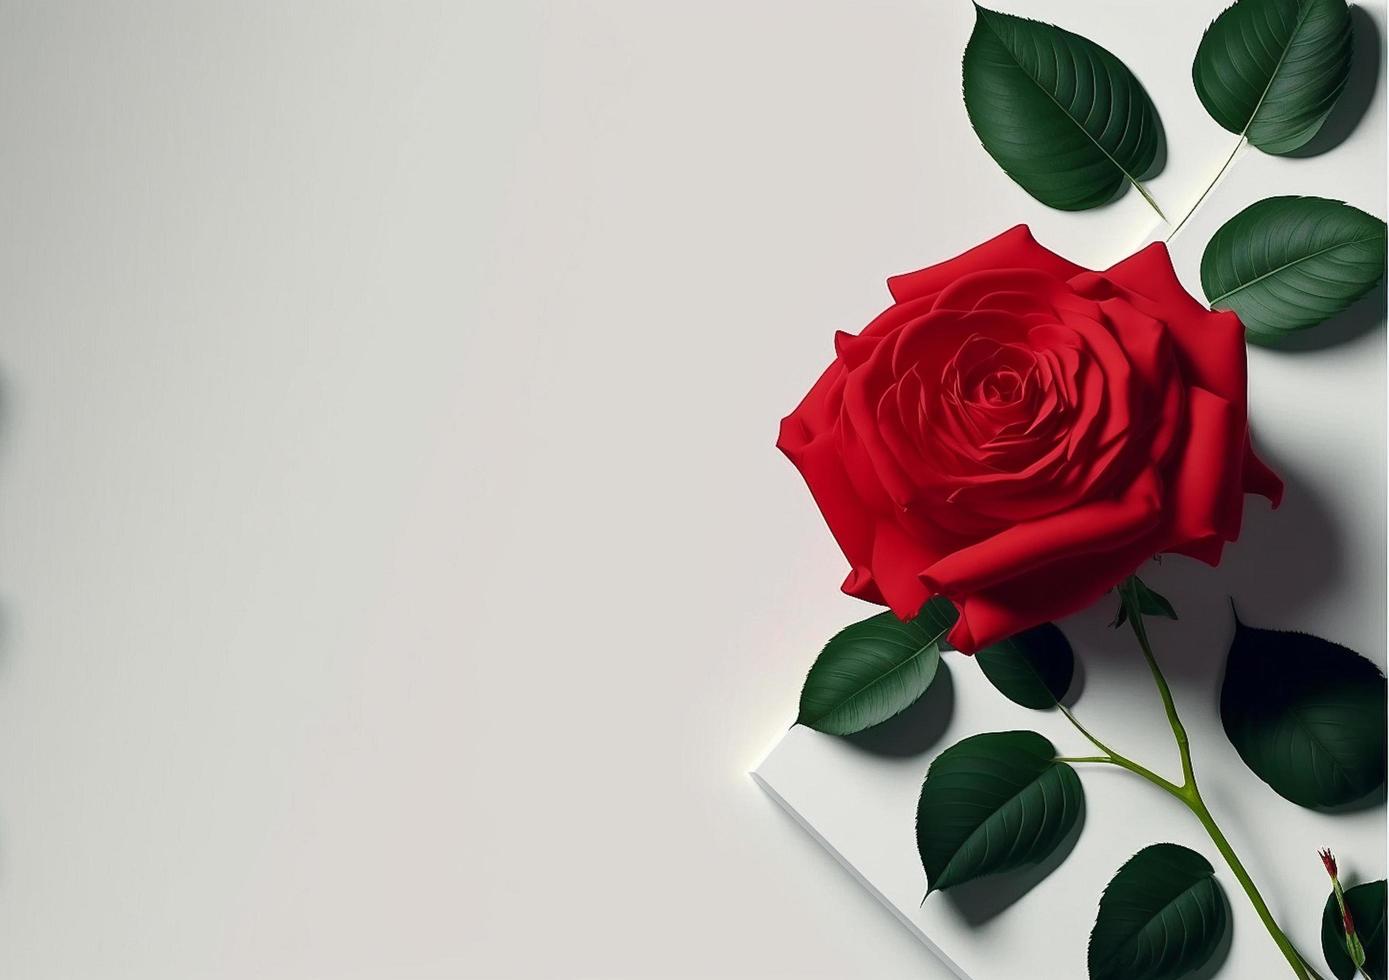 conception de fond de roses rouges pour texte, message, citations, saint valentin. photo